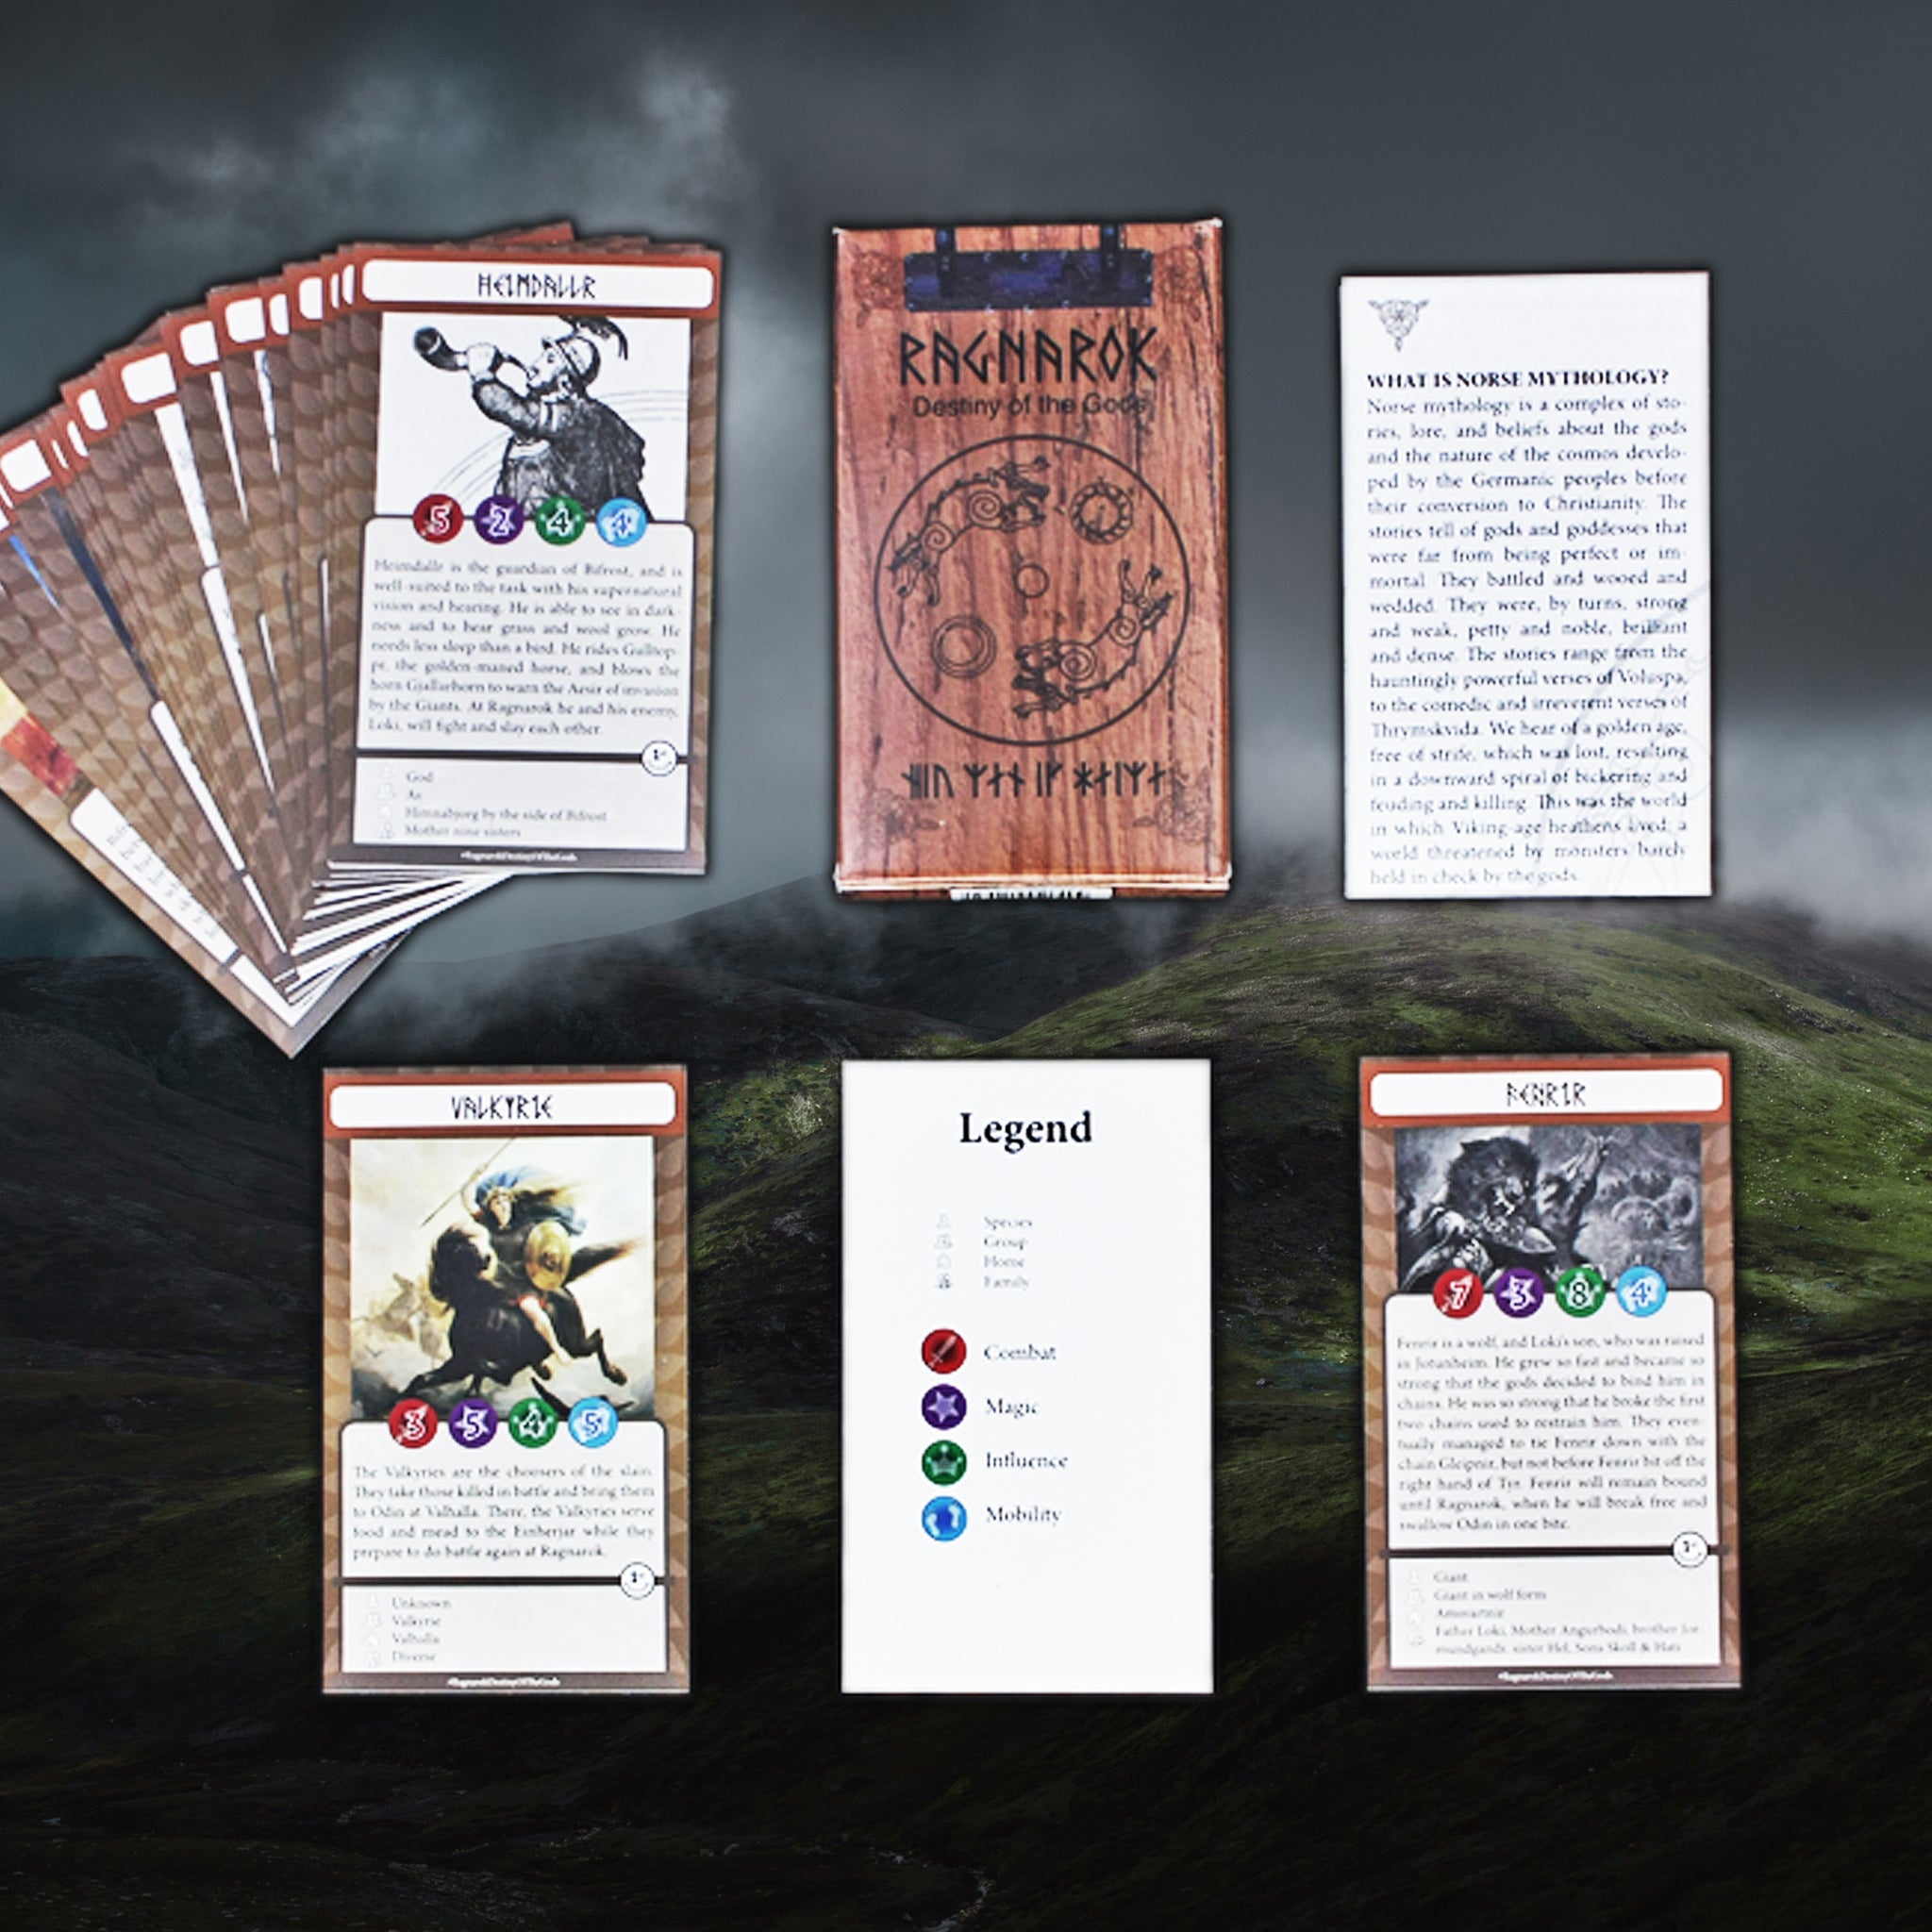 Ragnarok Destiny of the Gods - Norse Mythology Card Game